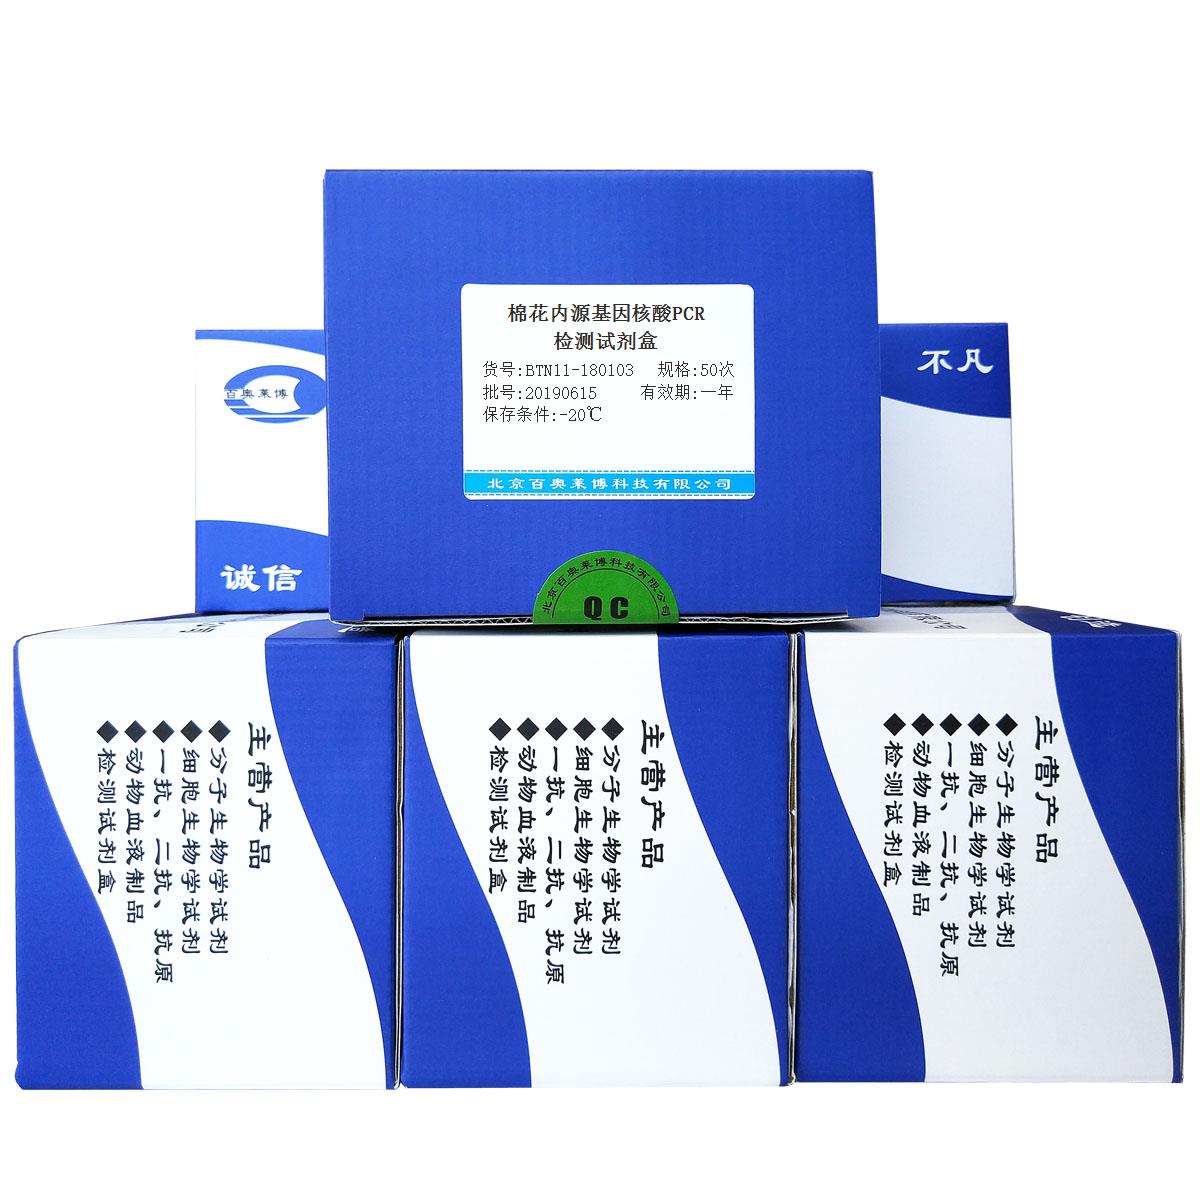 棉花内源基因核酸PCR检测试剂盒价格